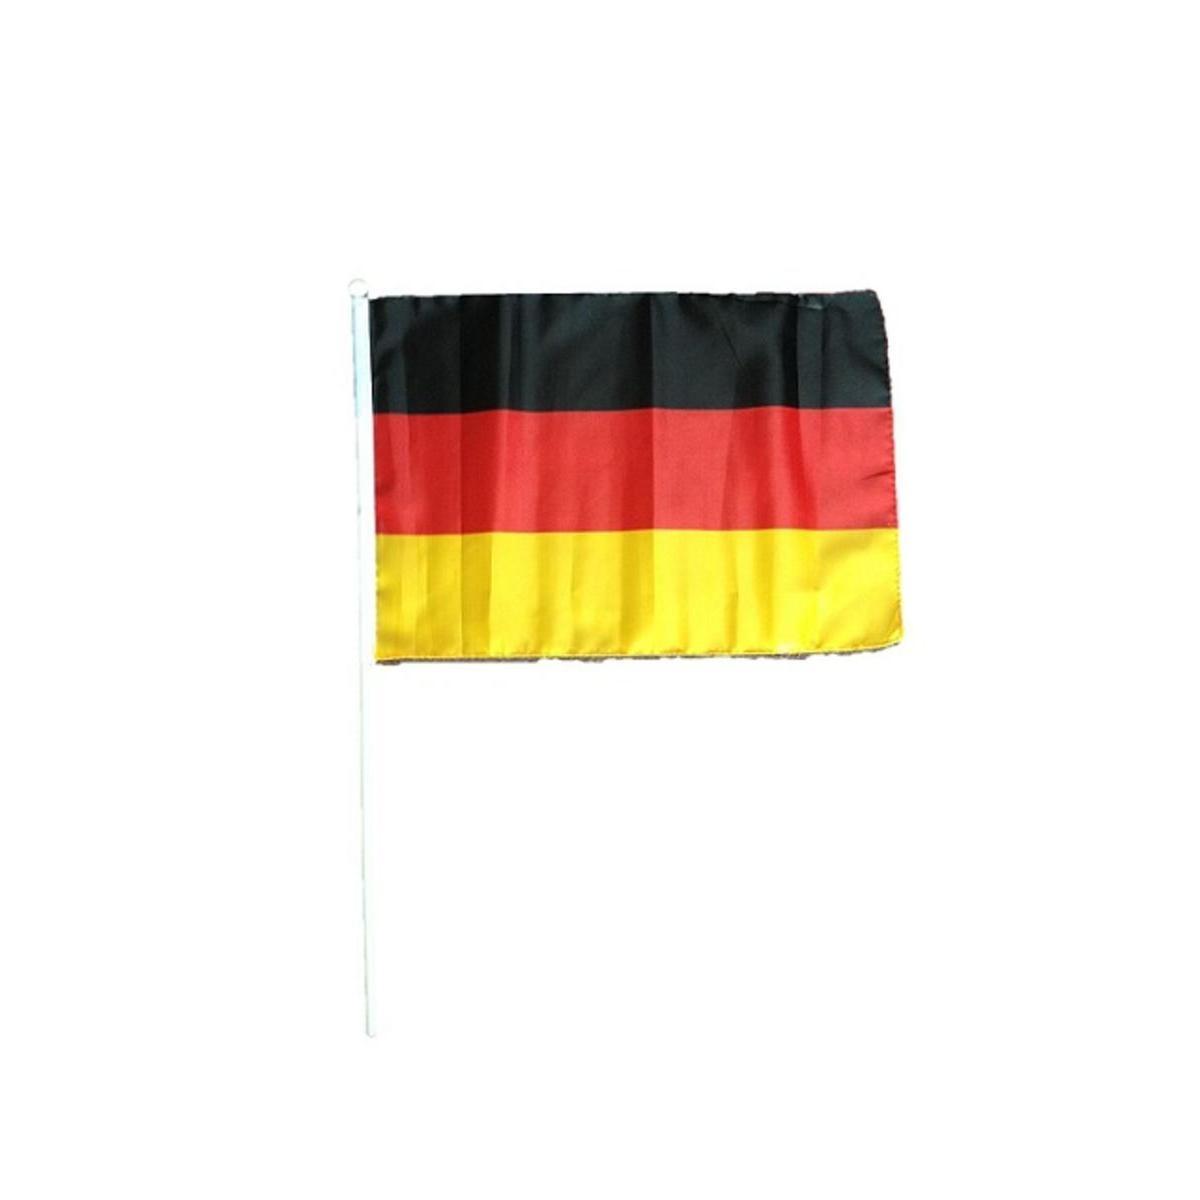 Drapeau sur manche Allemagne - L 45 x H 50 x l 30 cm - Noir, rouge, jaune